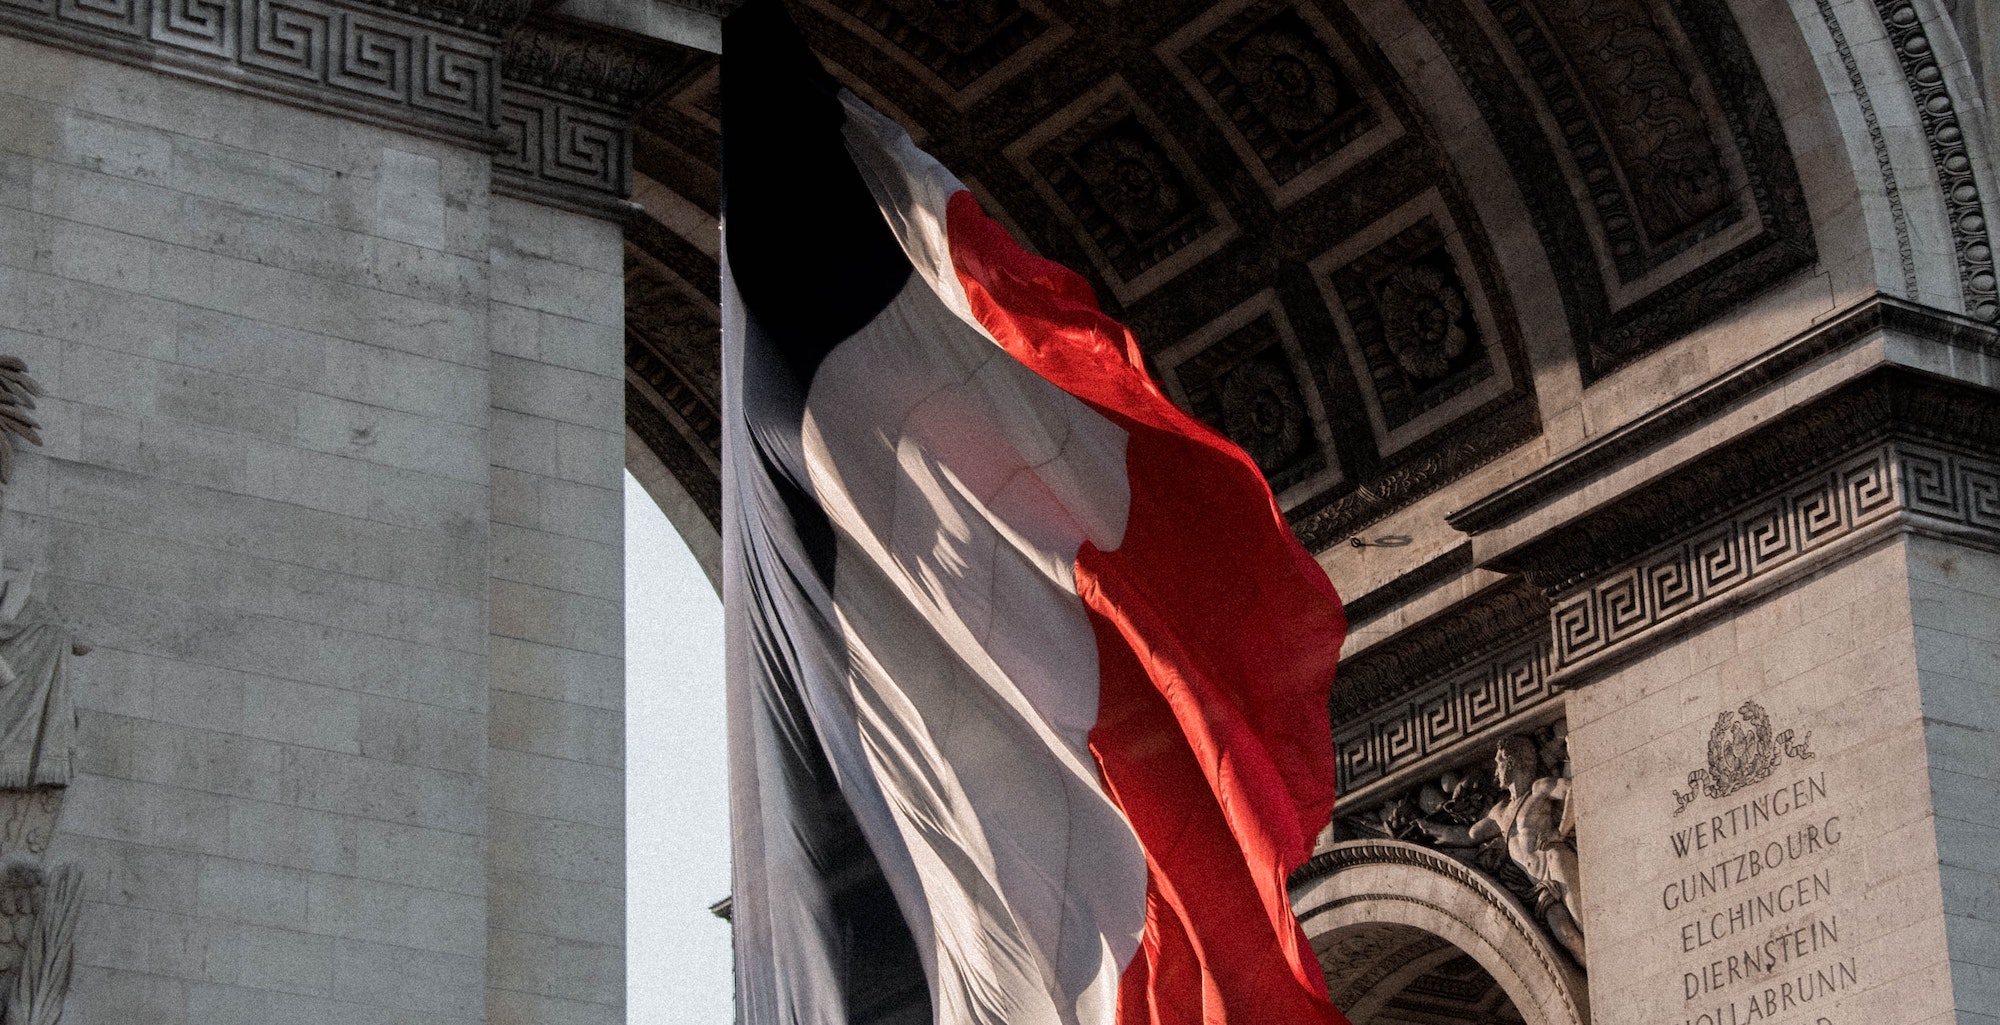 La tricolor ved l'Arc du triomphe, Franskundervisning hos FOF Køge Bugt